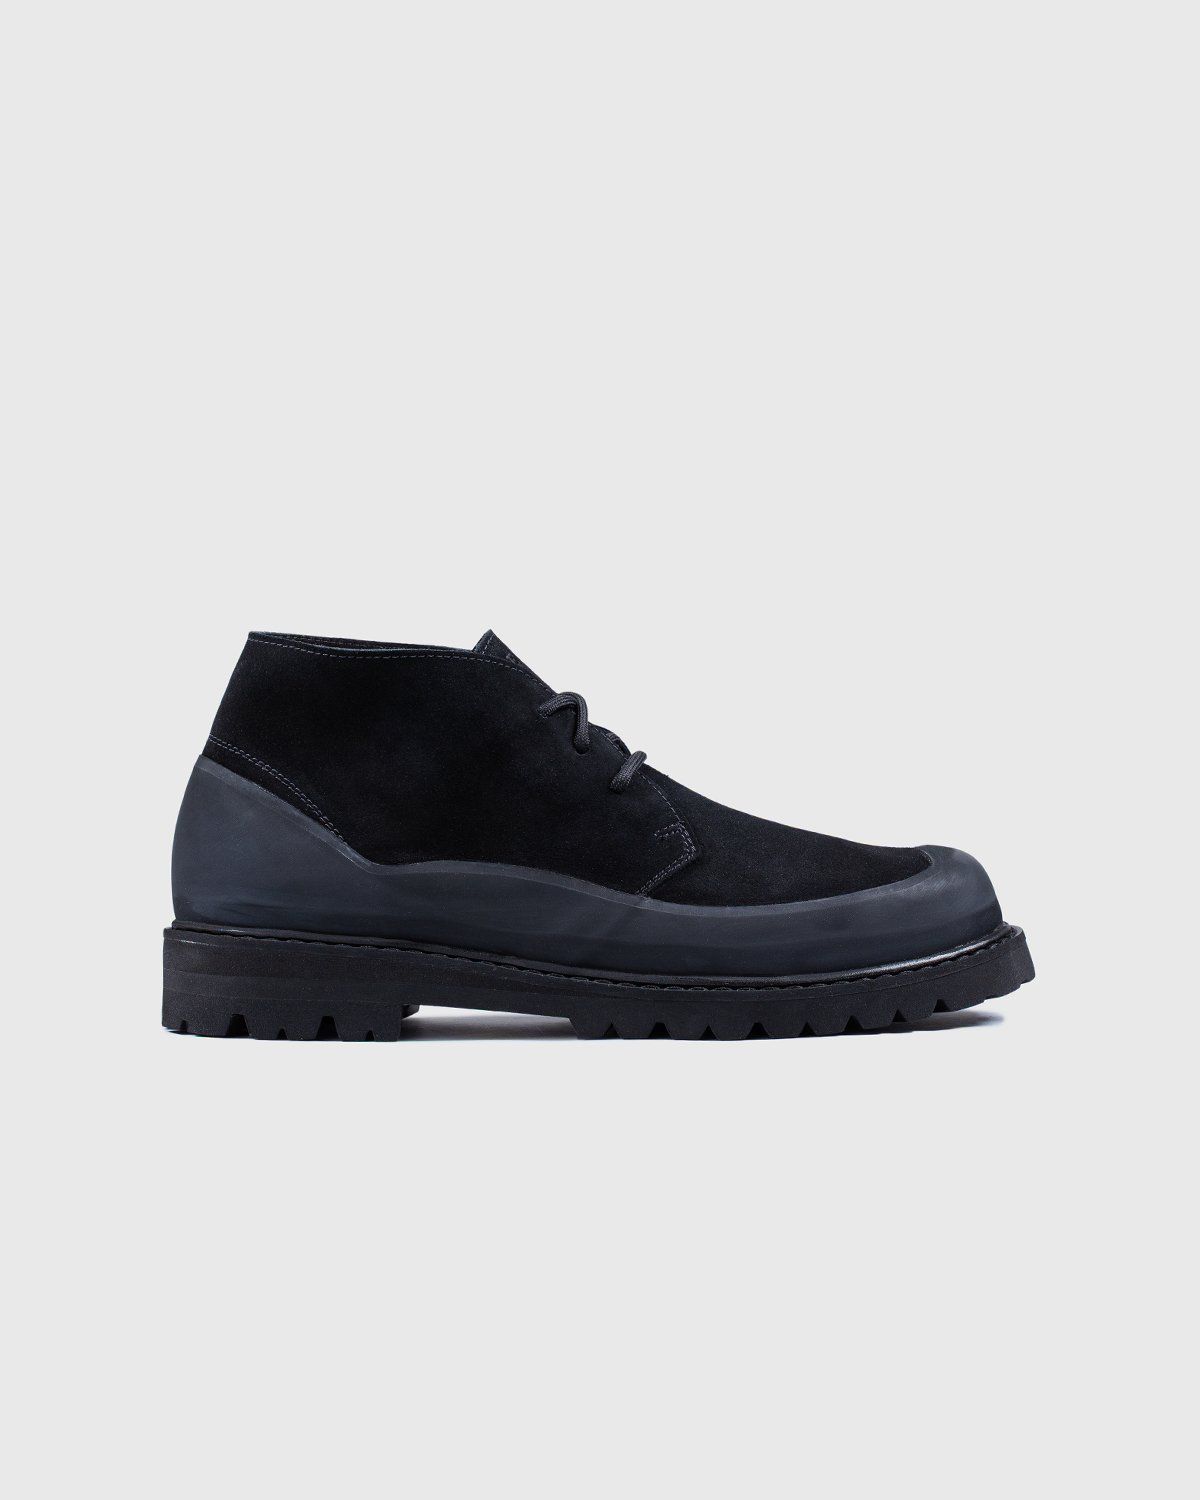 Diemme – Asiago Black Suede - Shoes - Black - Image 1